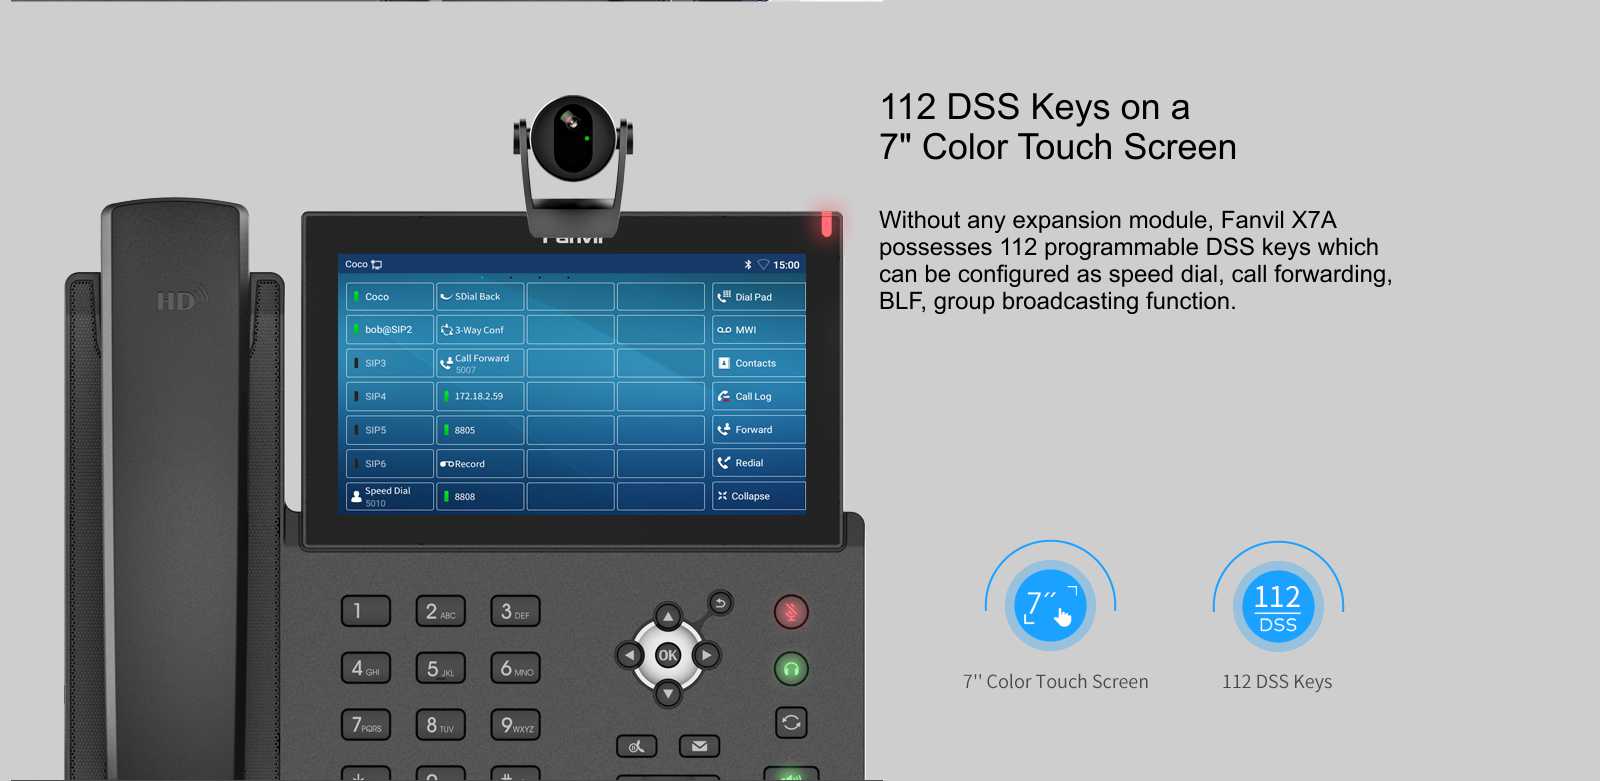 Fanvil X7A 122 DSS Keys 7in Color Touch Screen